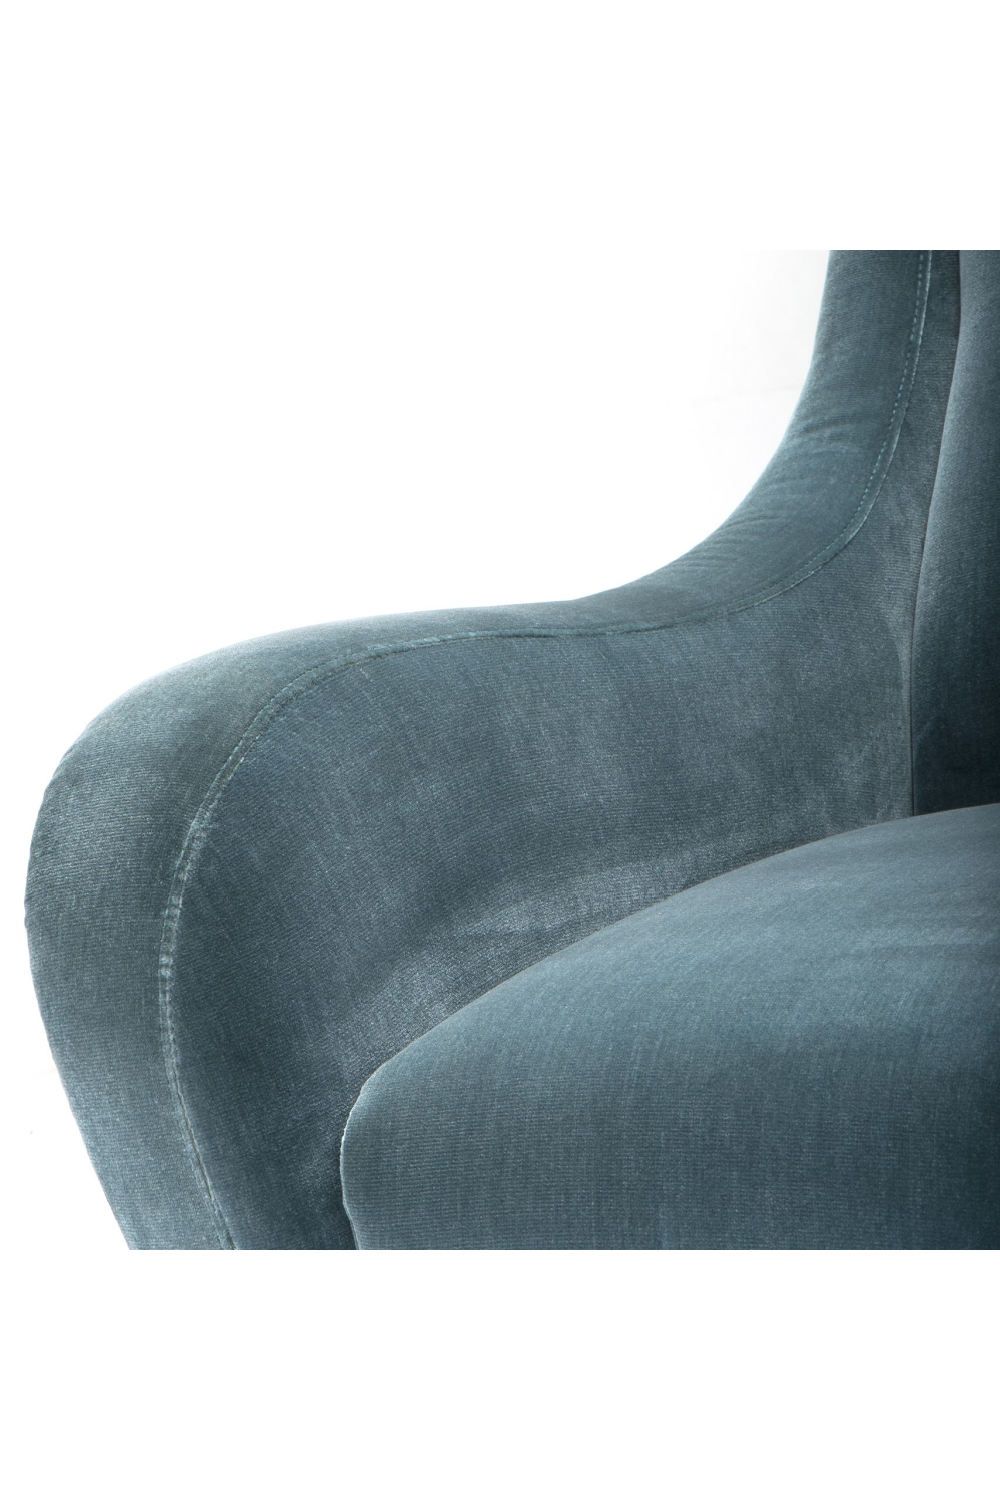 Blue Lounge Armchair | Eichholtz Giardino| Oroa.com